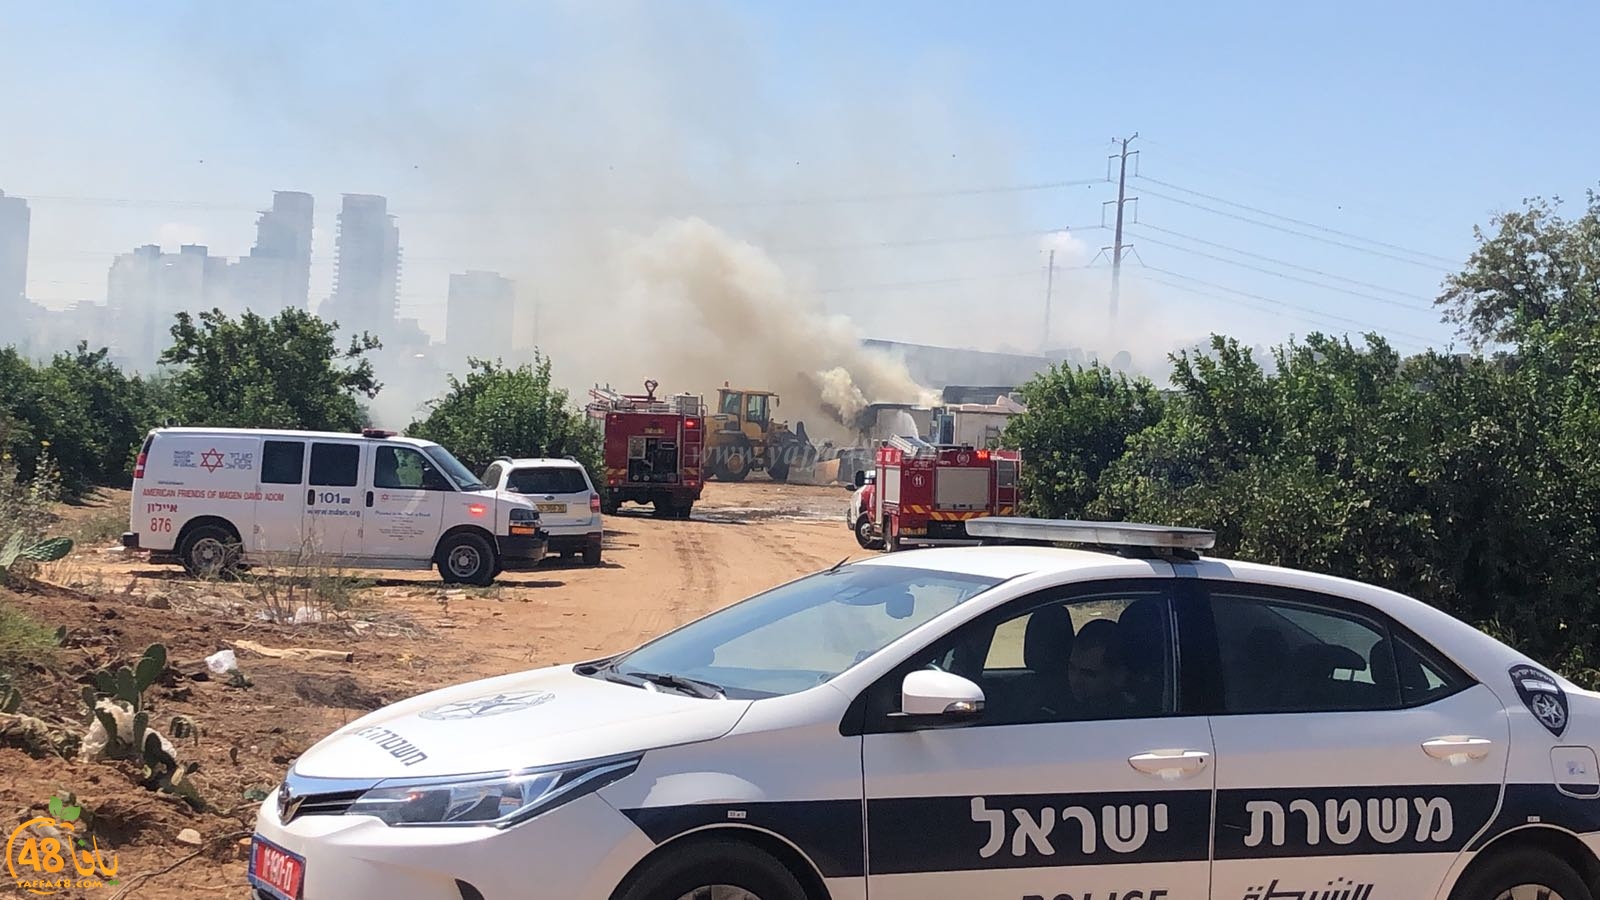  بالصور: حريق كبير داخل احد المصانع قرب الرملة